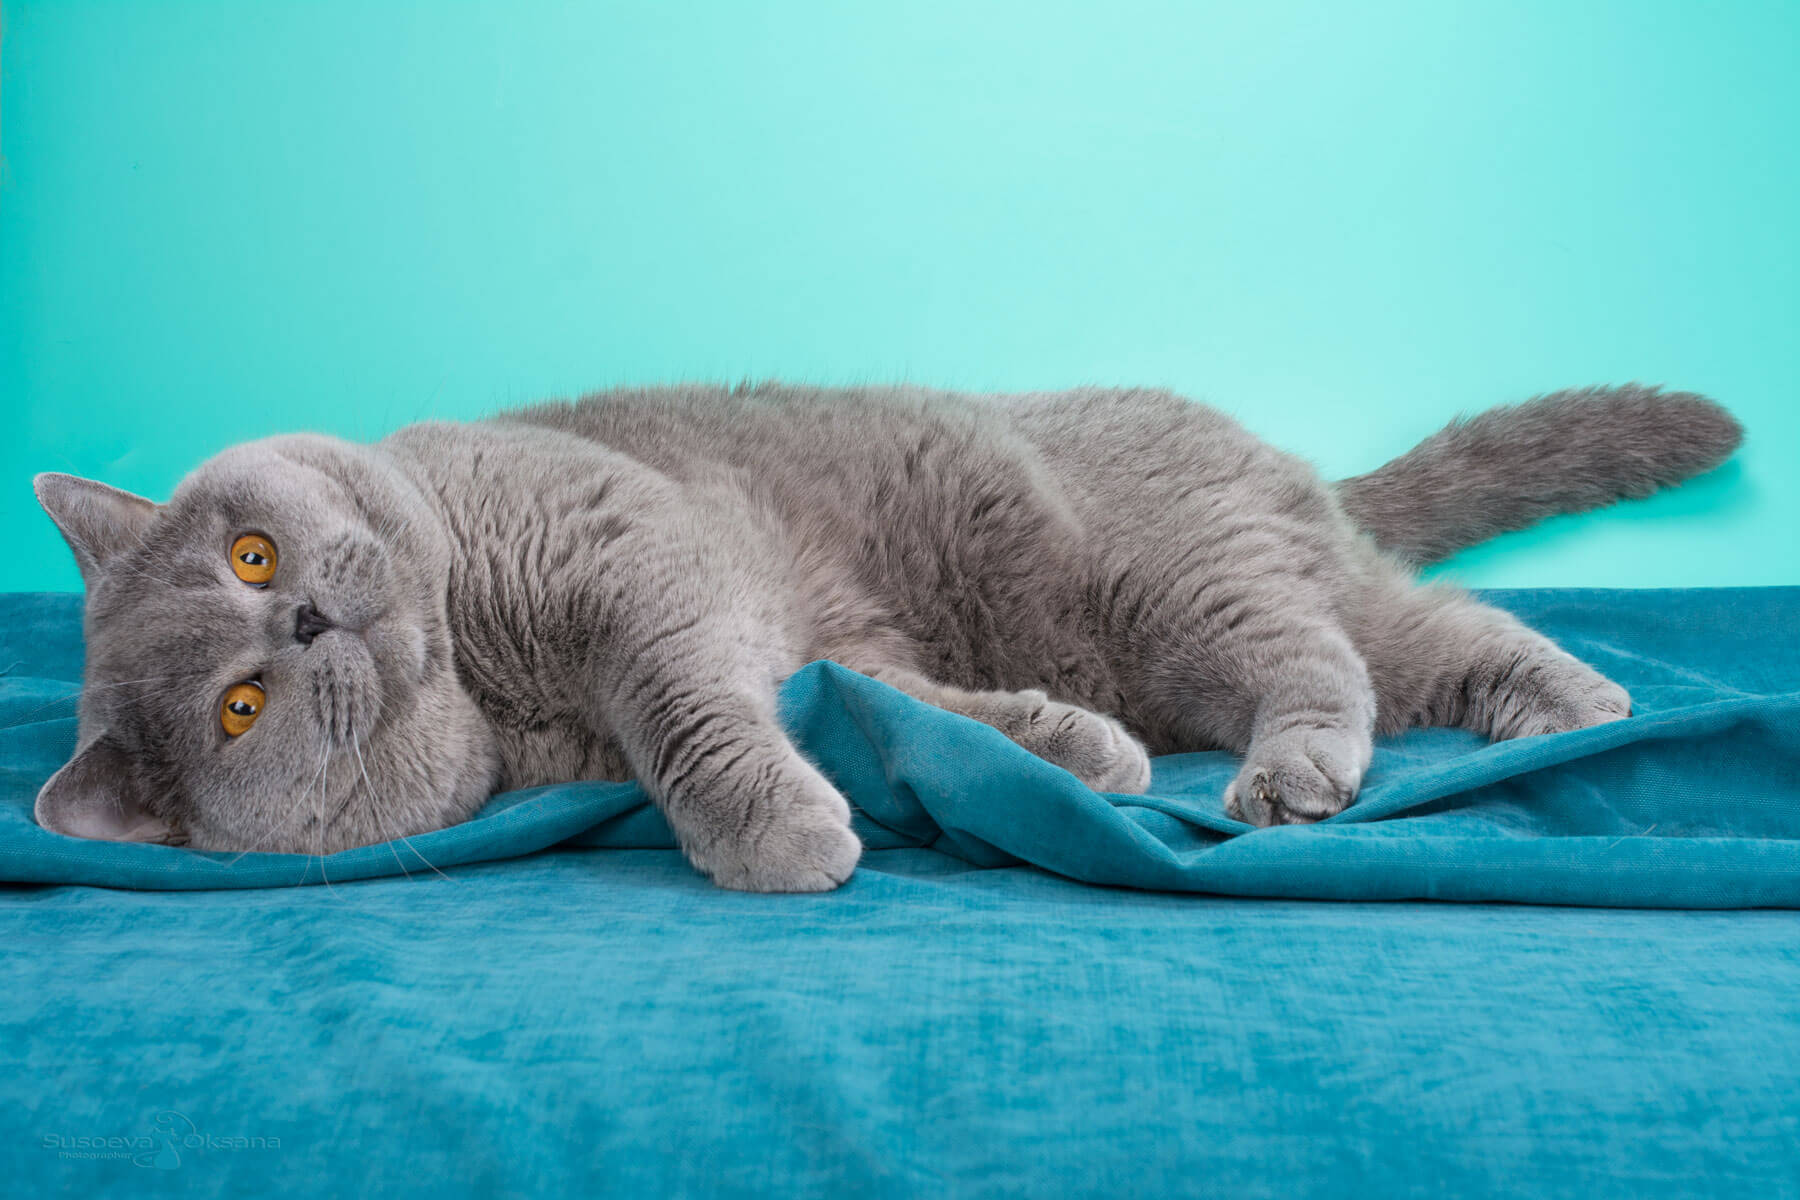 Фото британского голубого кота Цезаря